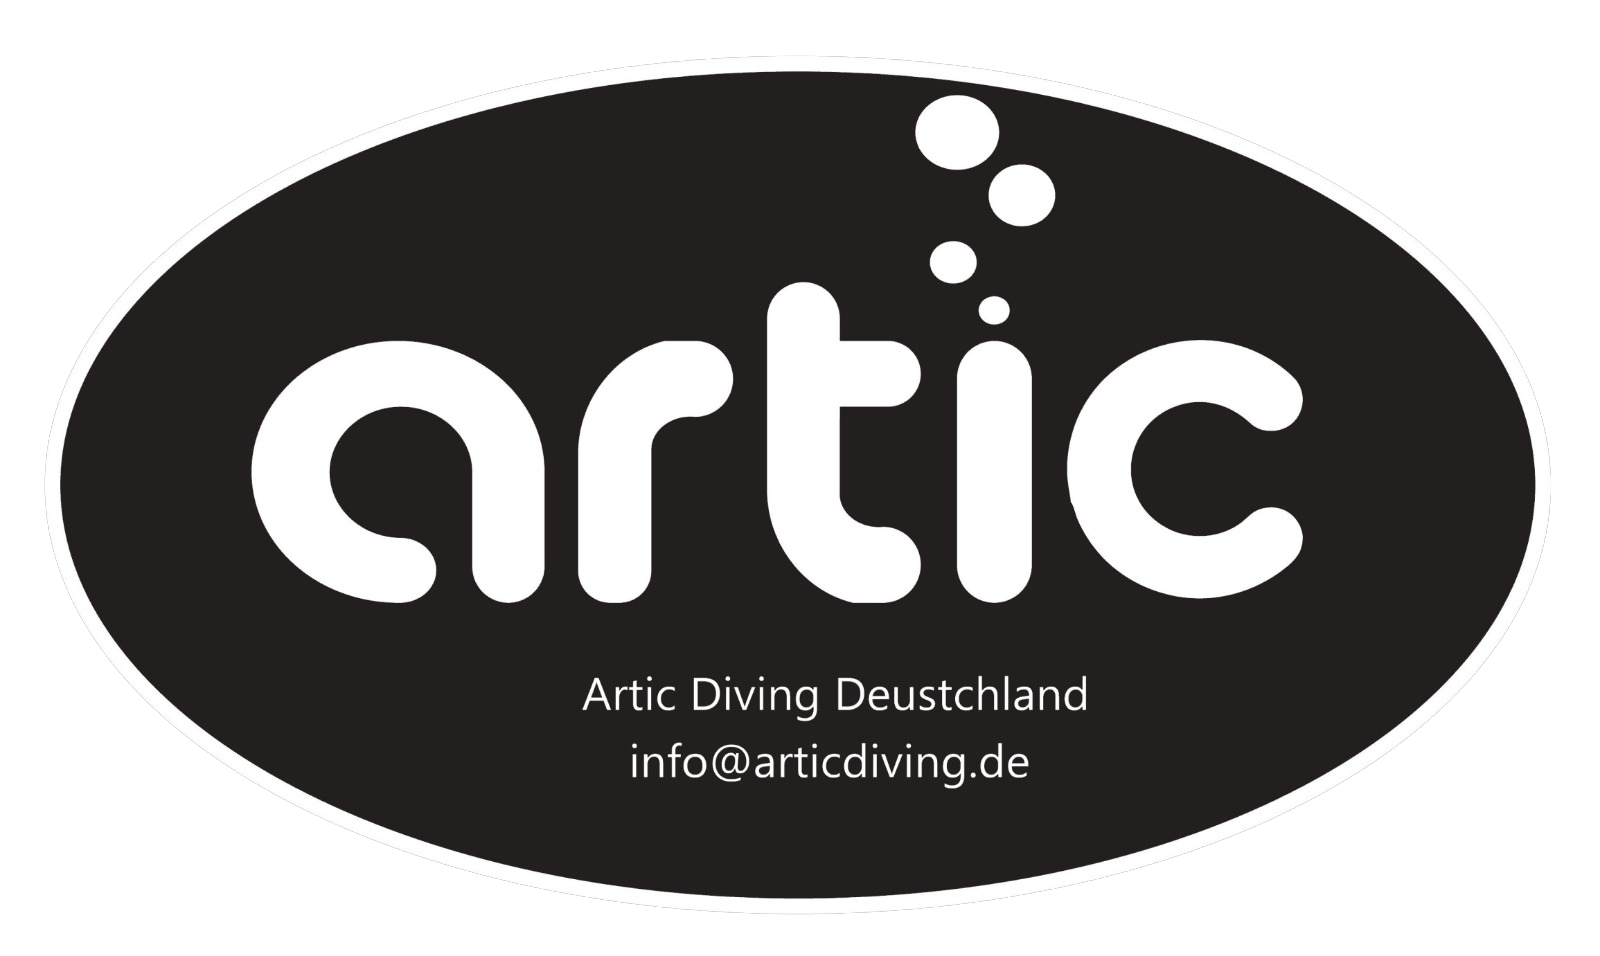 Artic diving